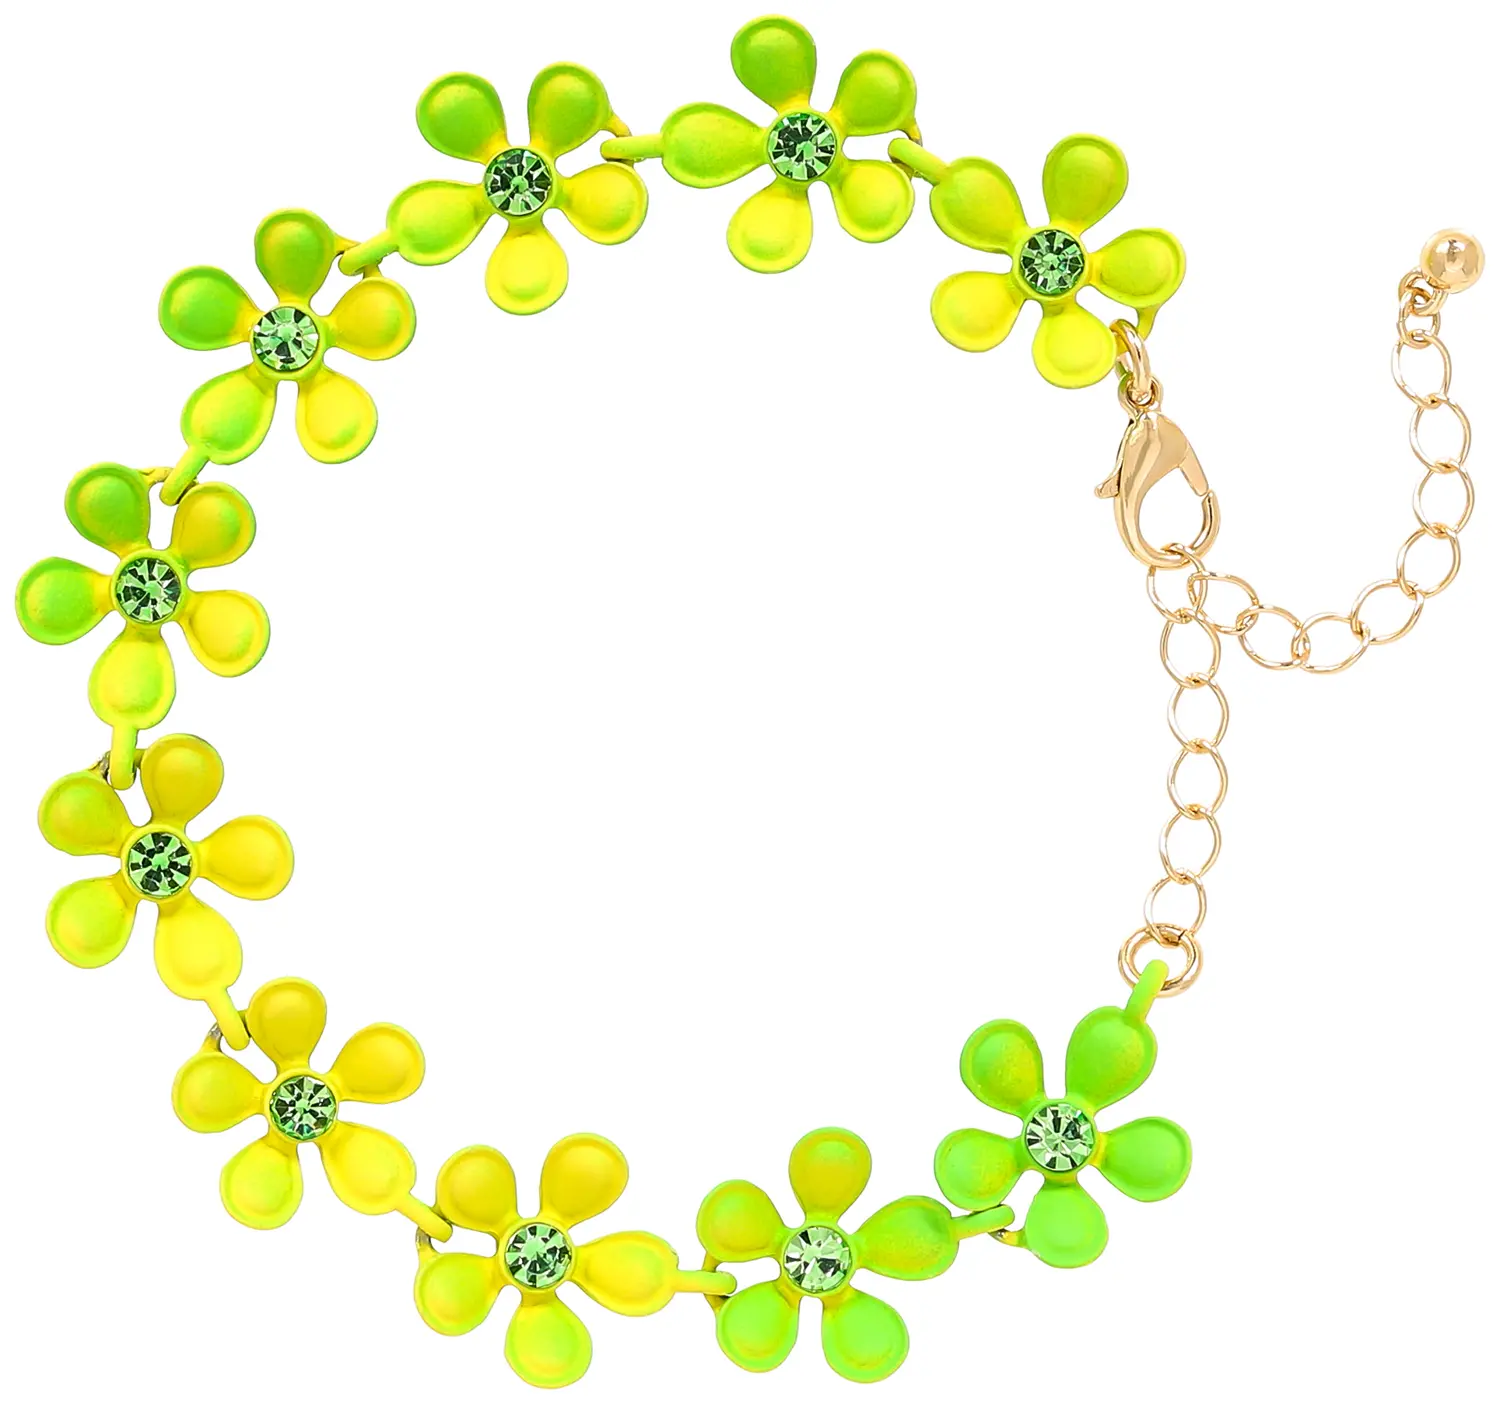 Bracelet - Green Flowers